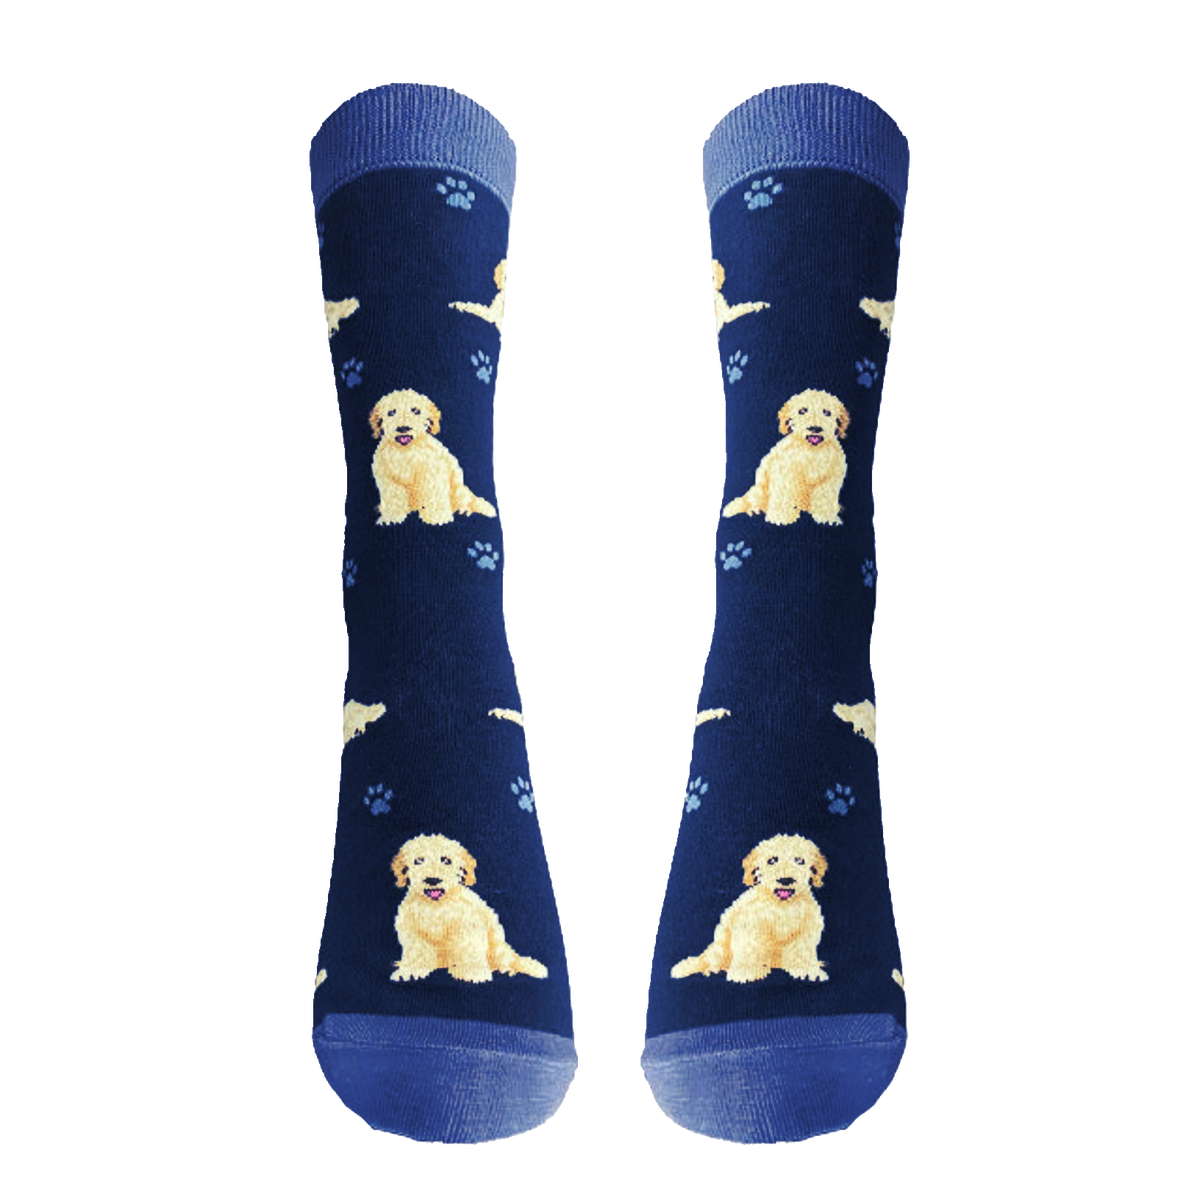 Goldendoodle Dog Socks